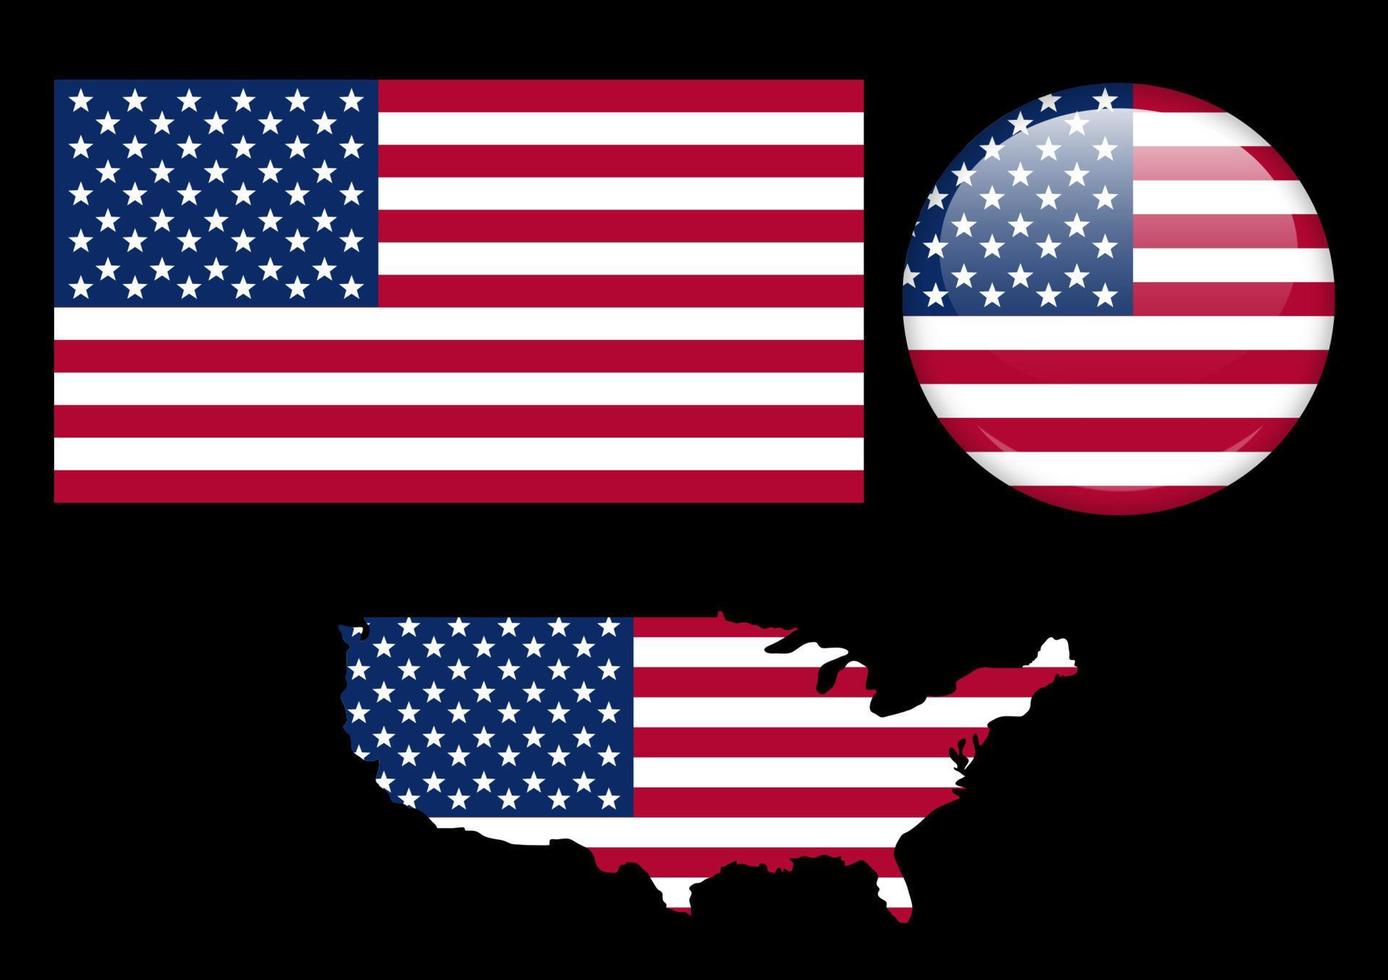 Grafikdesign Usa-Flaggenvektorvorlage isolierter schwarzer Hintergrund vektor